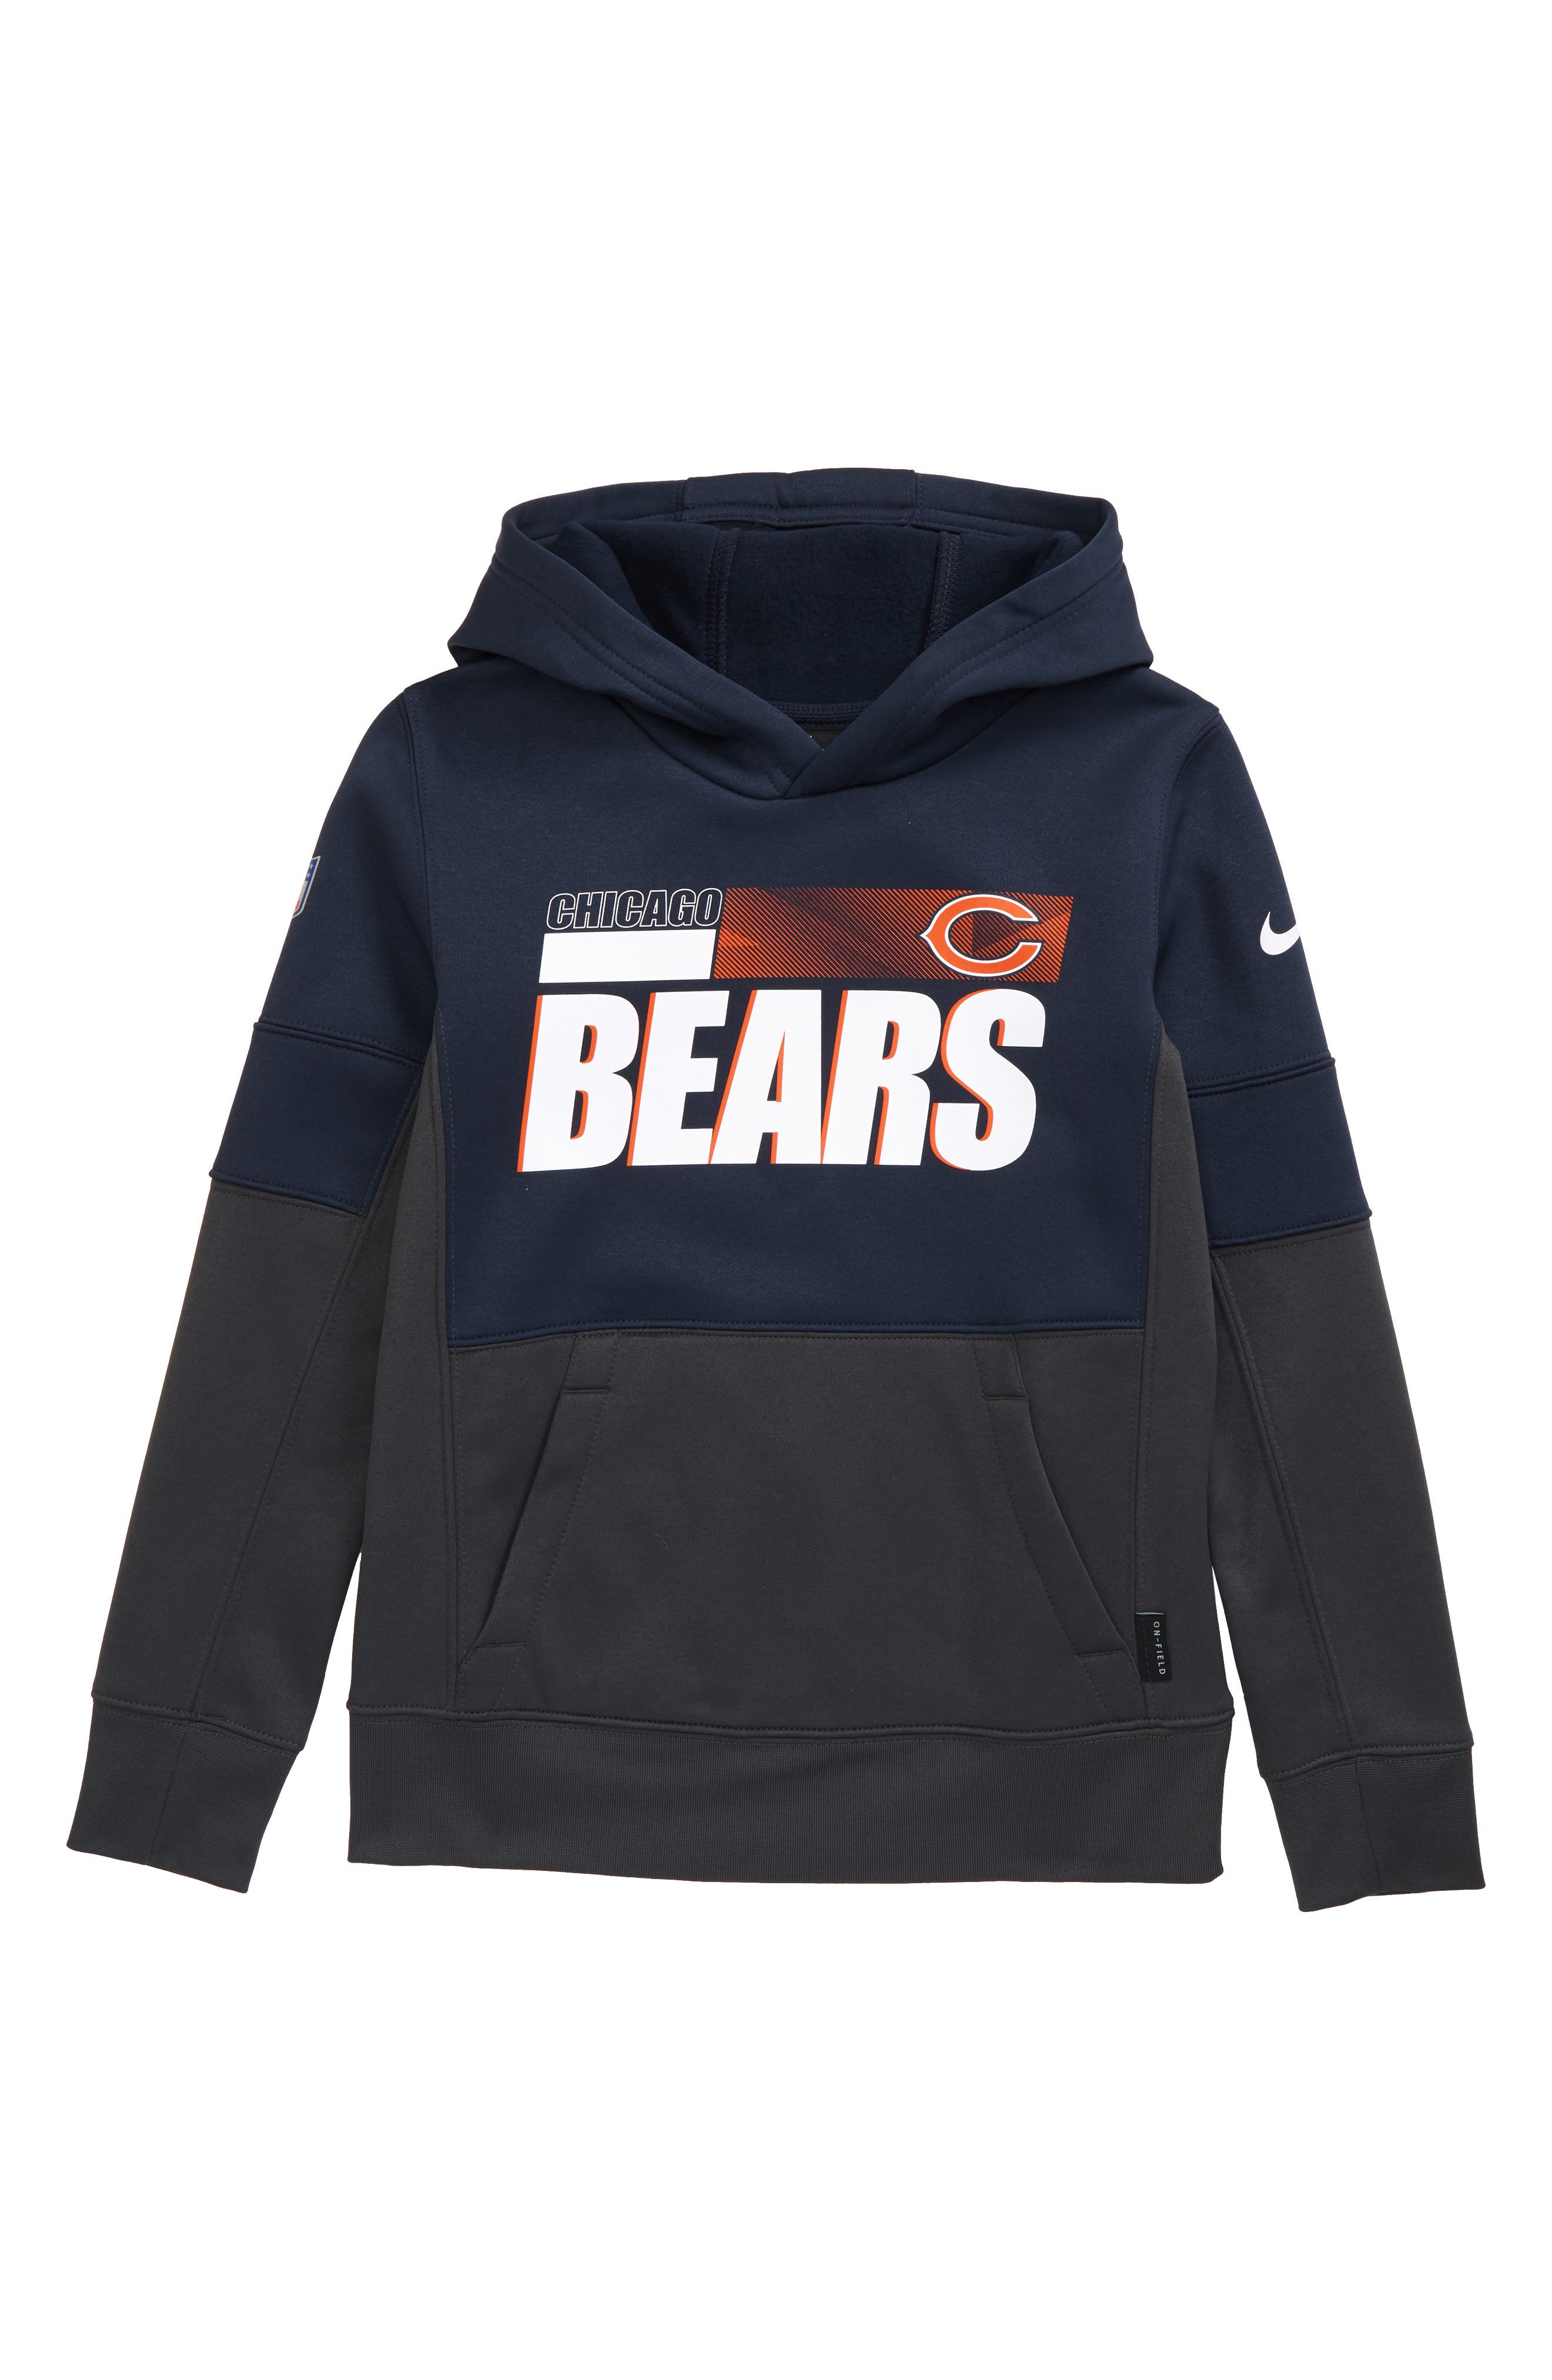 chicago bears nike hoodie